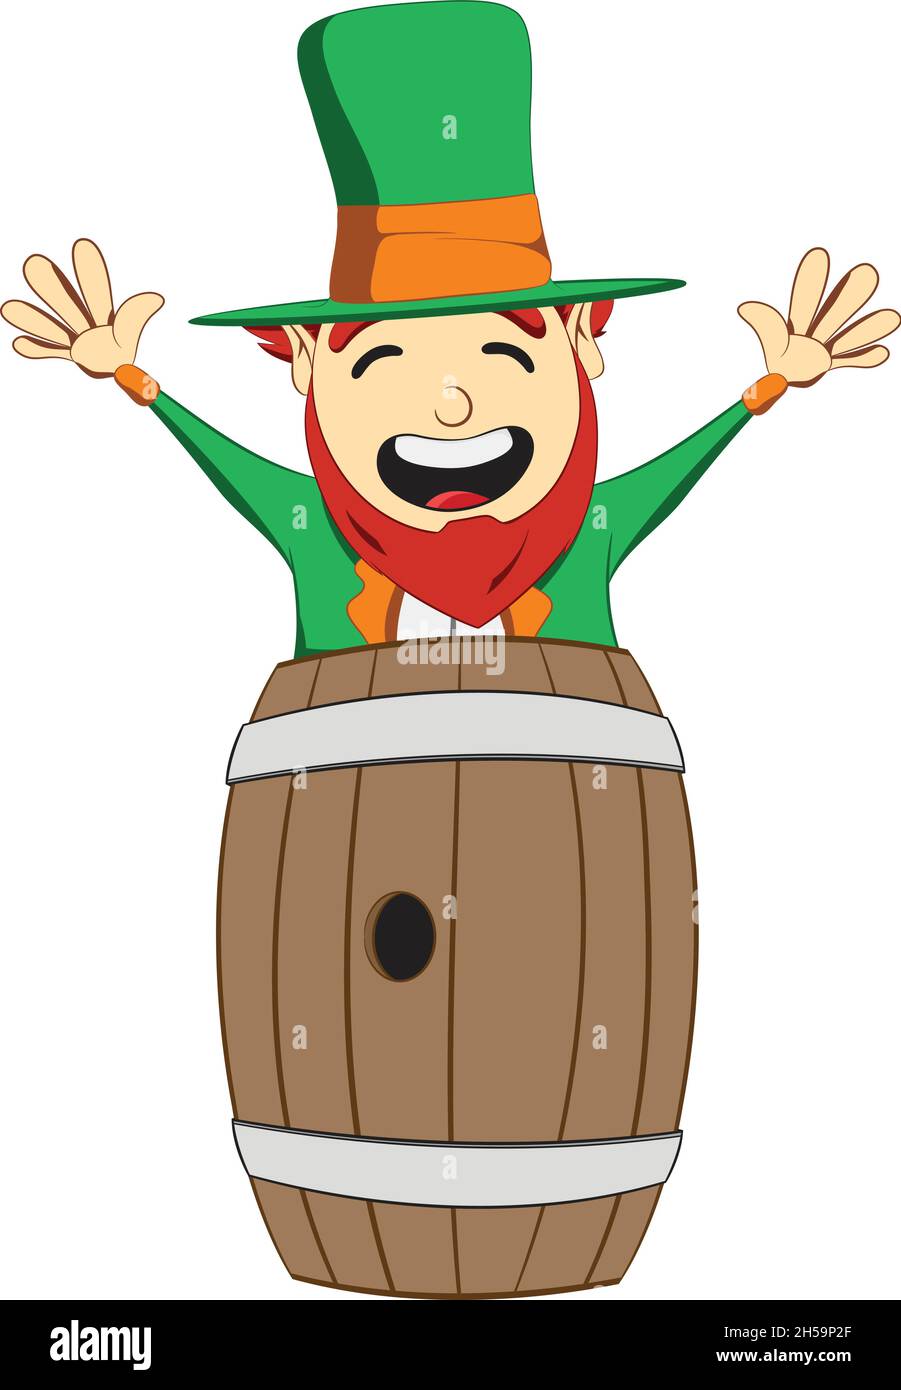 Saint Patricks Day Kobold Charakter. Kobold springt aus einem Fass. Green Suite Kobold feiert irisches Festival. Stock Vektor